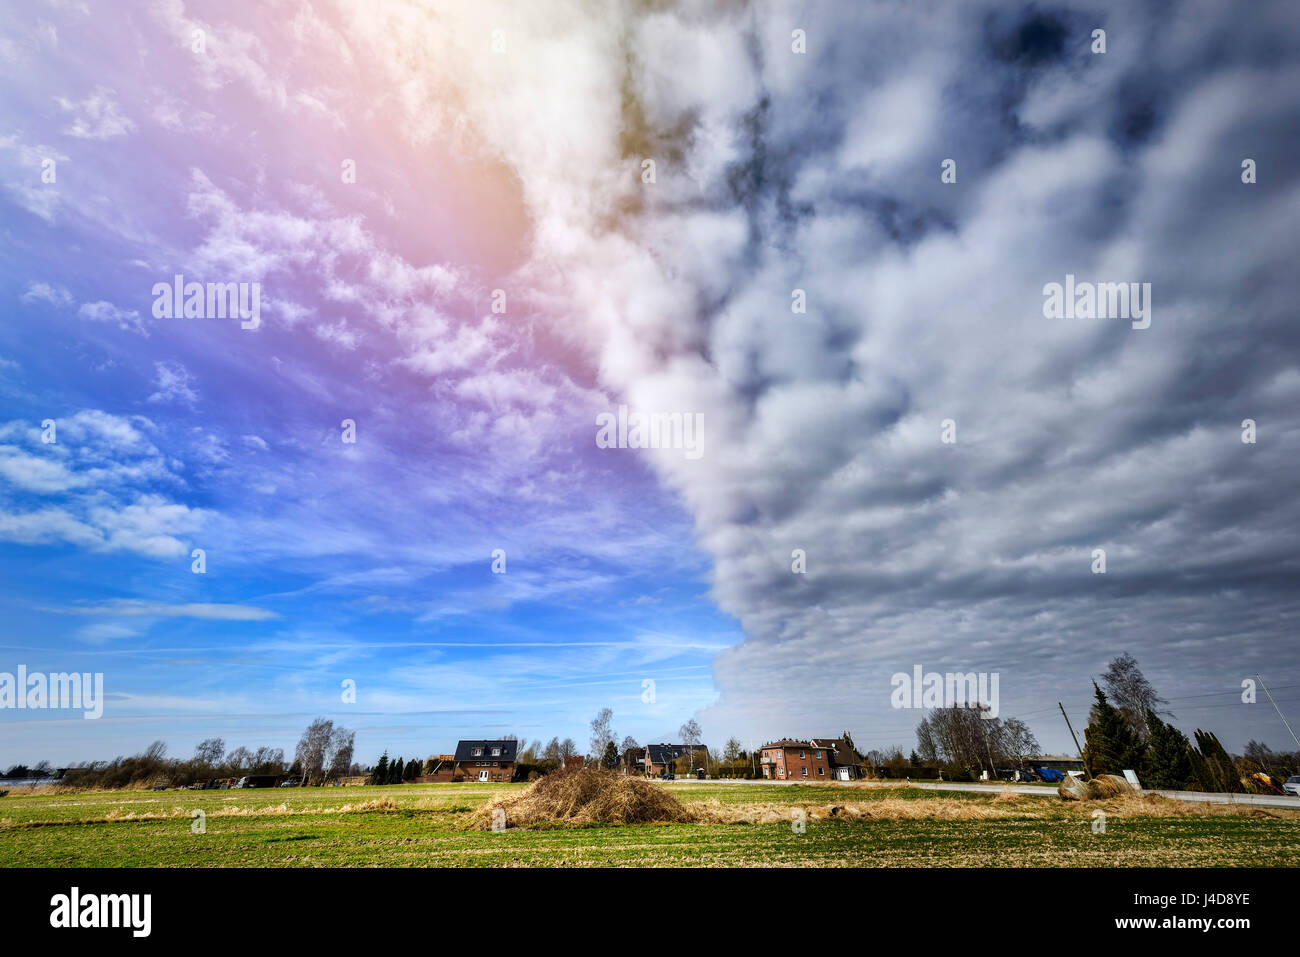 Fair-meteo front sulla regione rurale ad Amburgo, Germania, Europa Schoenwetterfront ueber laendlicher Regione in Amburgo, Deutschland, Europa Foto Stock